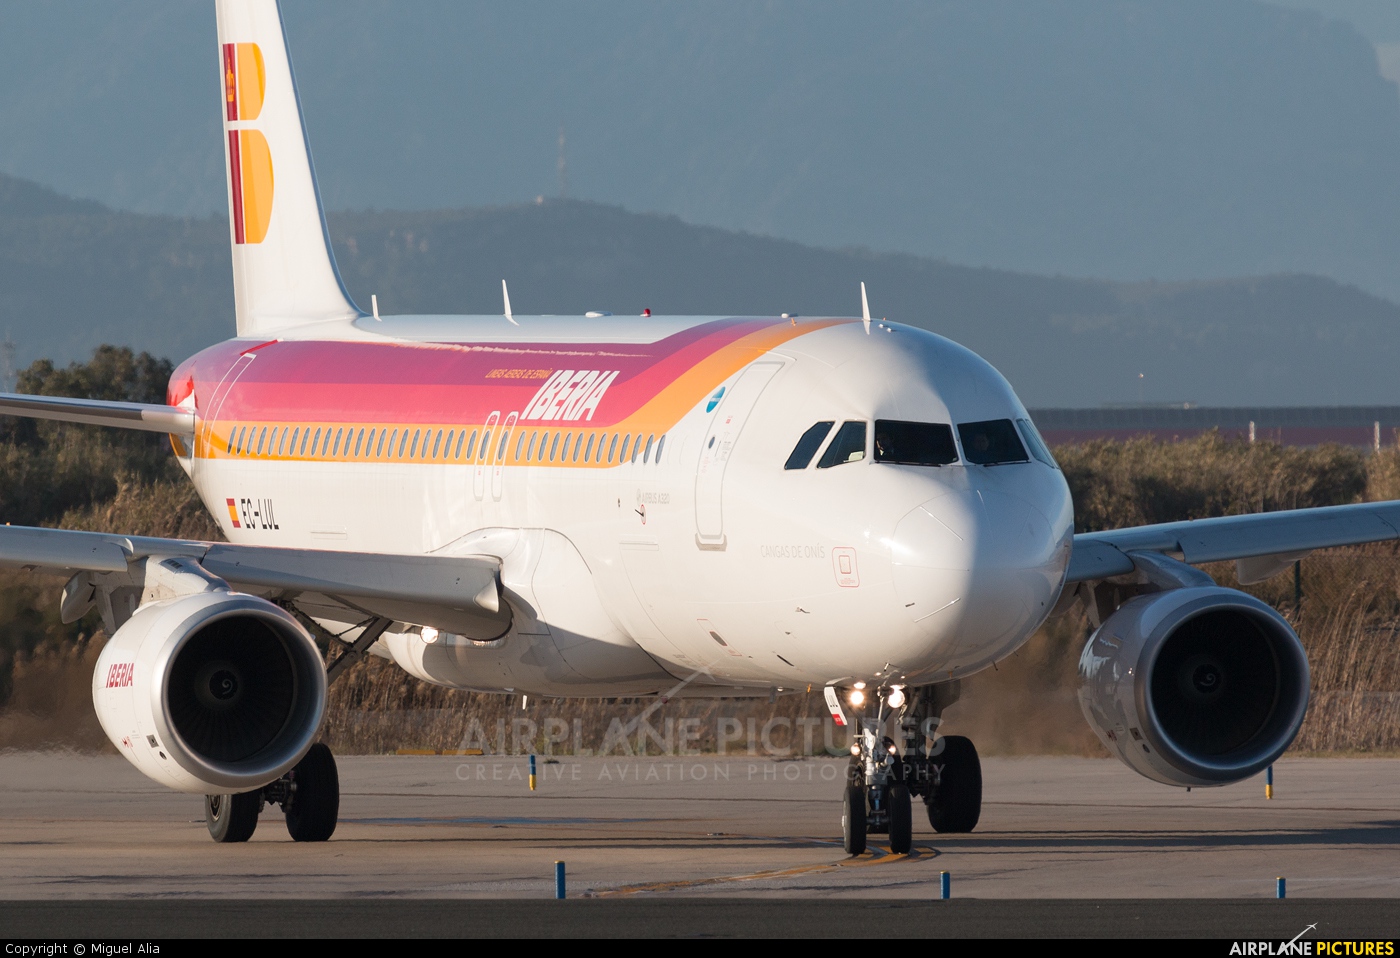 Iberia EC-LUL aircraft at Barcelona - El Prat